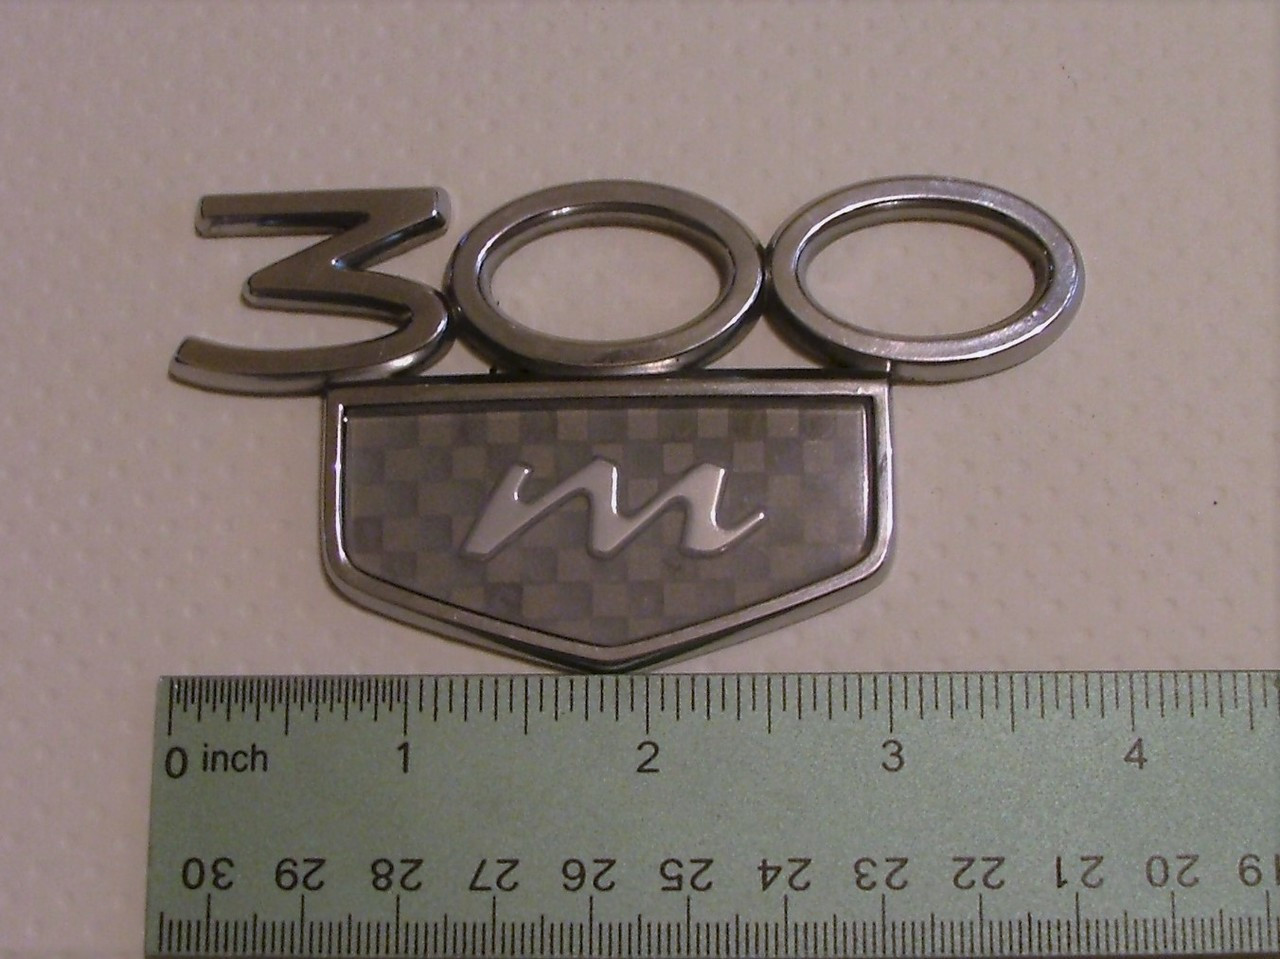 Original 1999-2000-2001-2002-2003-2004 Chrysler 300M Trunk Lid Emblem-Badge